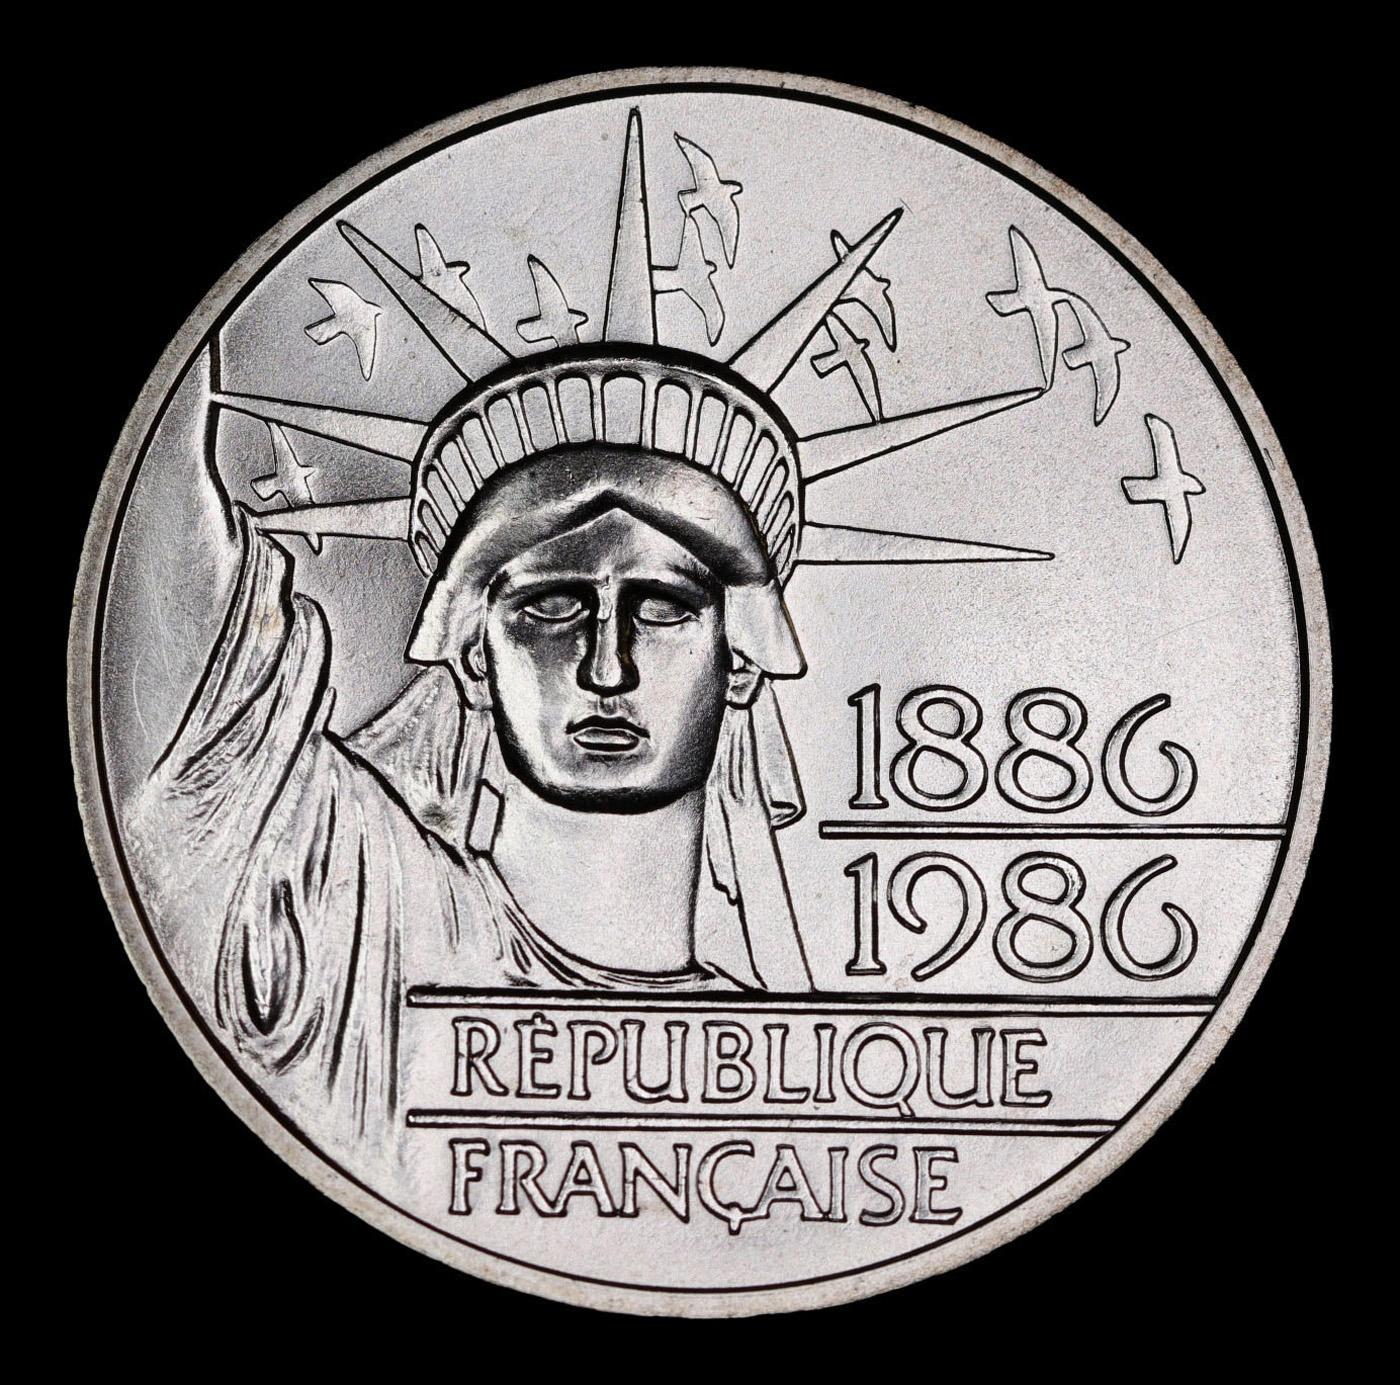 1986 France 100 Francs Piedfort Silver KM#?P972 Grades Choice Unc